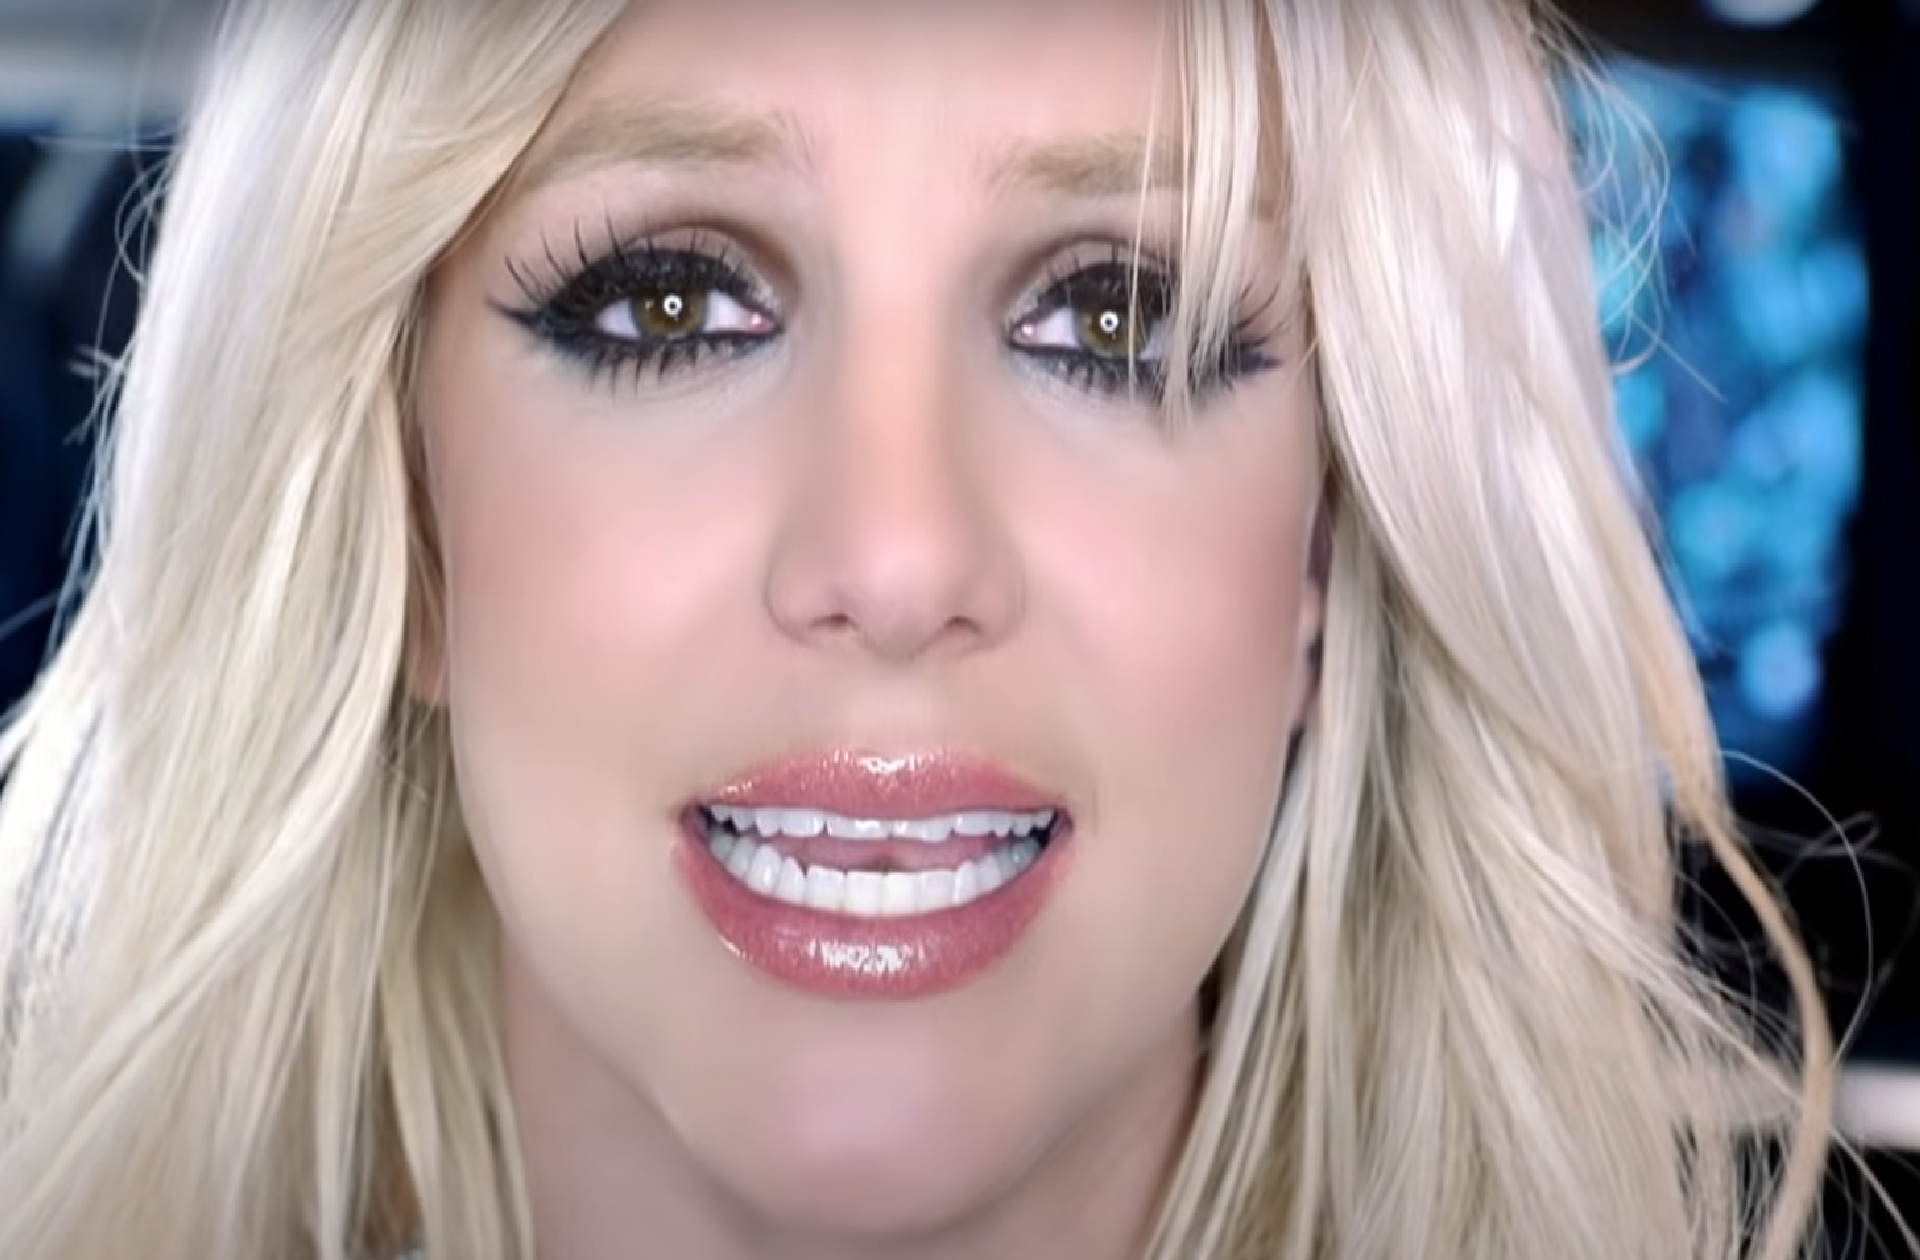 Toujours sous tutelle, Britney Spears s’apprête à défendre elle-même ses droits devant la justice